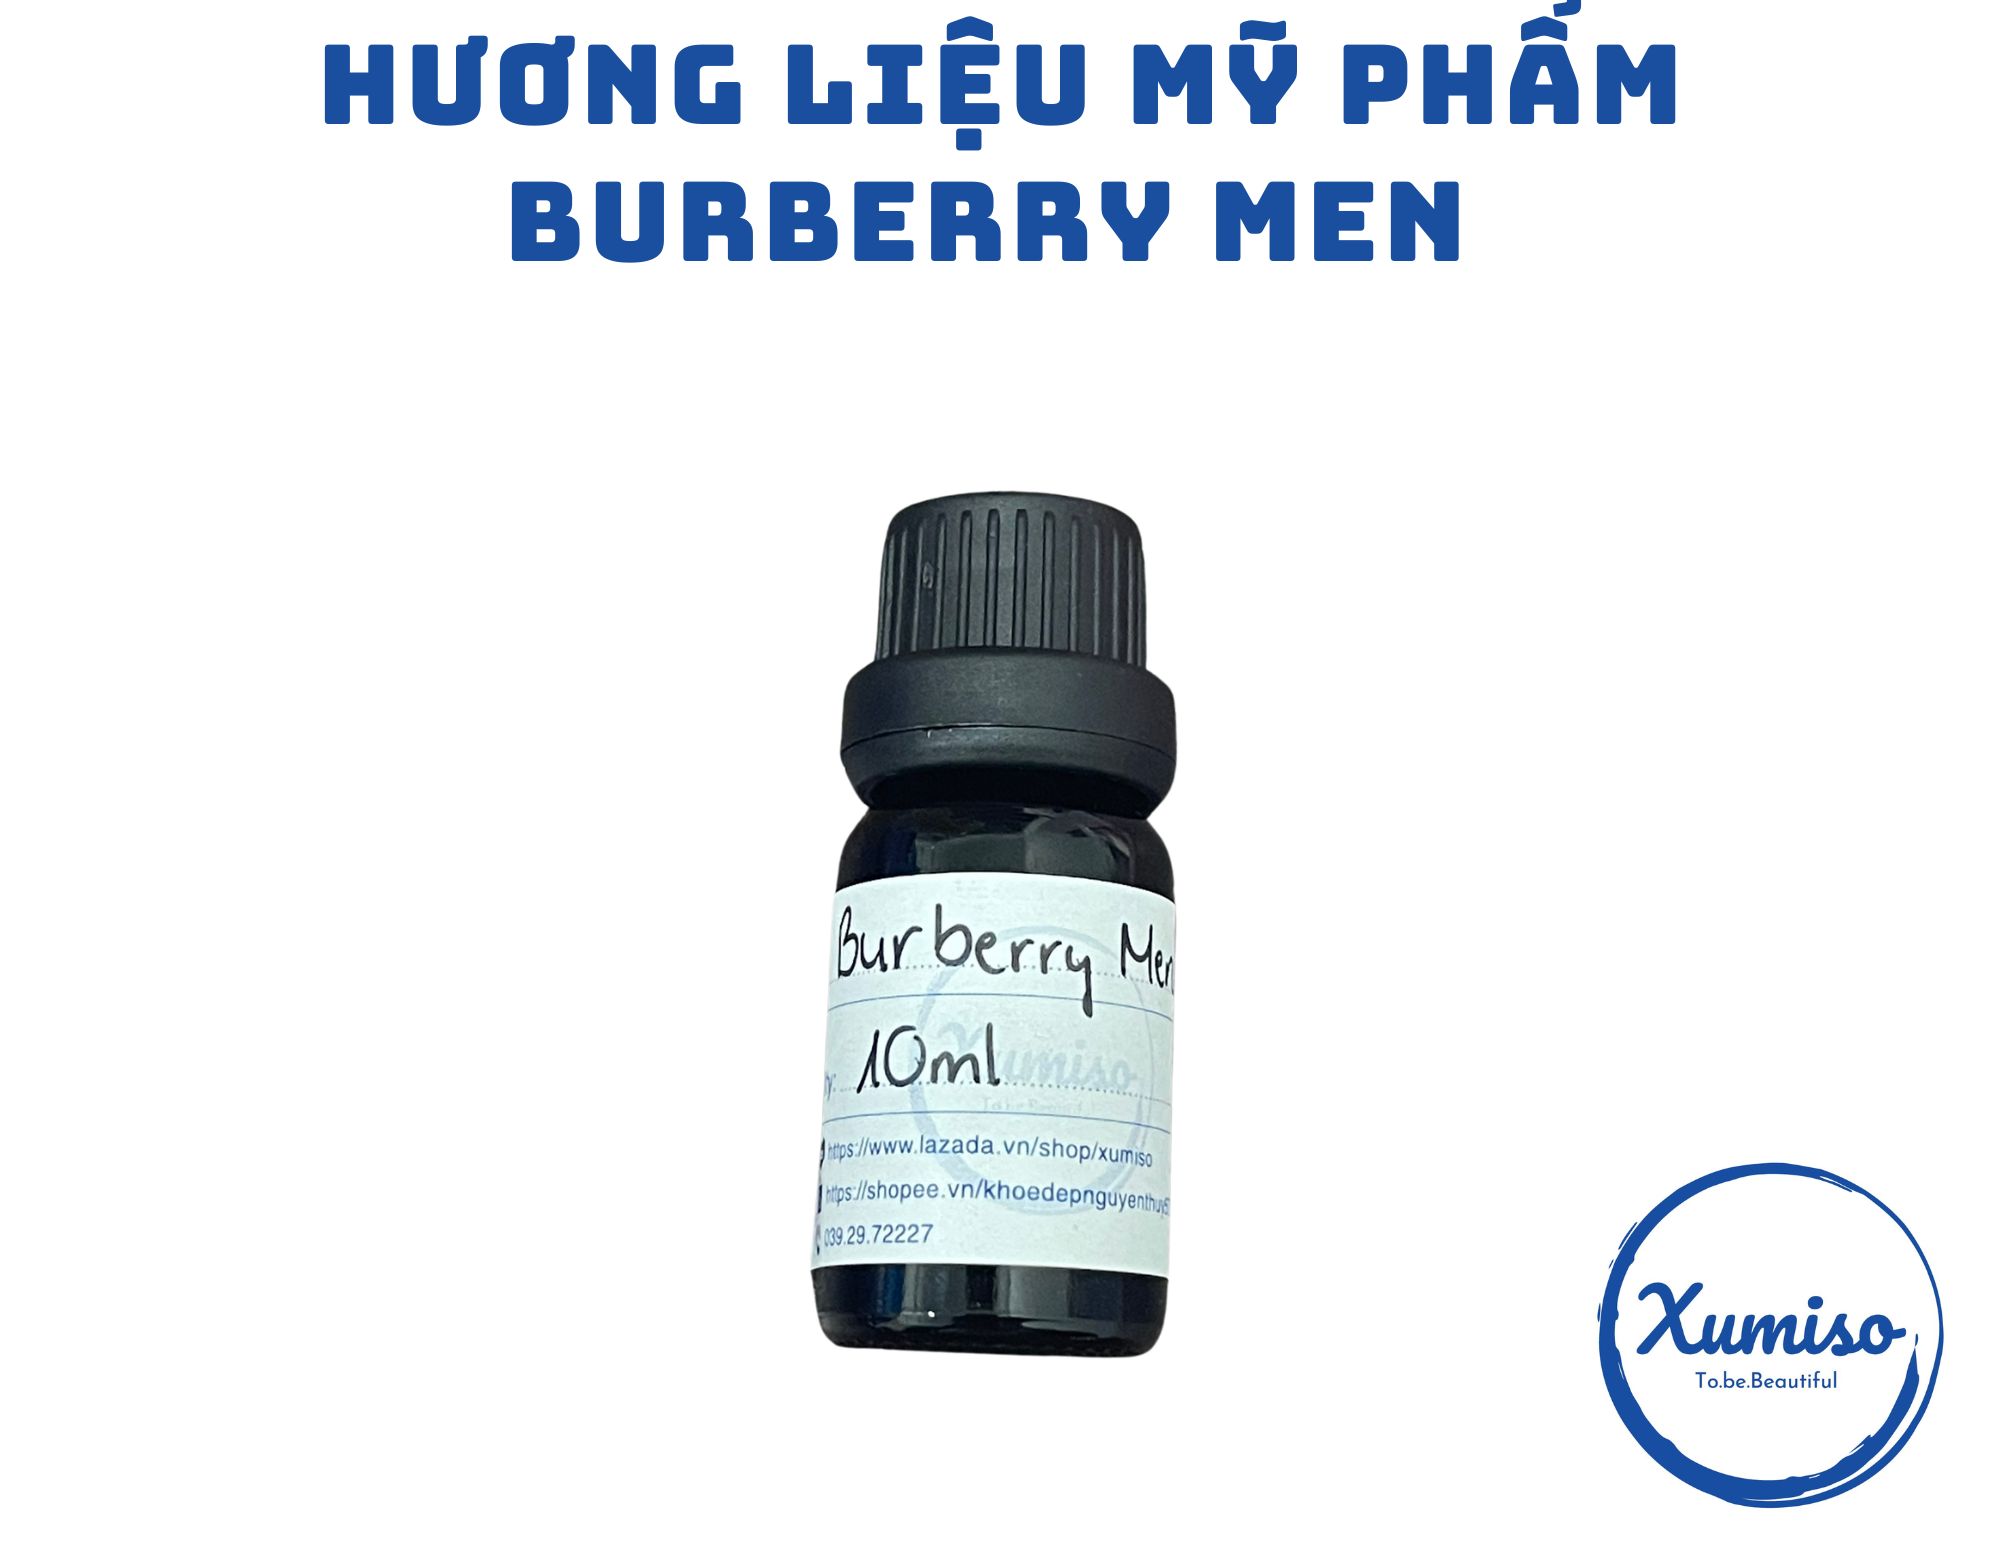 [HCM] Hương Burberry Men- Hương nước hoa - Hương liệu mỹ phẩm - Xumiso 5mL:/10mL